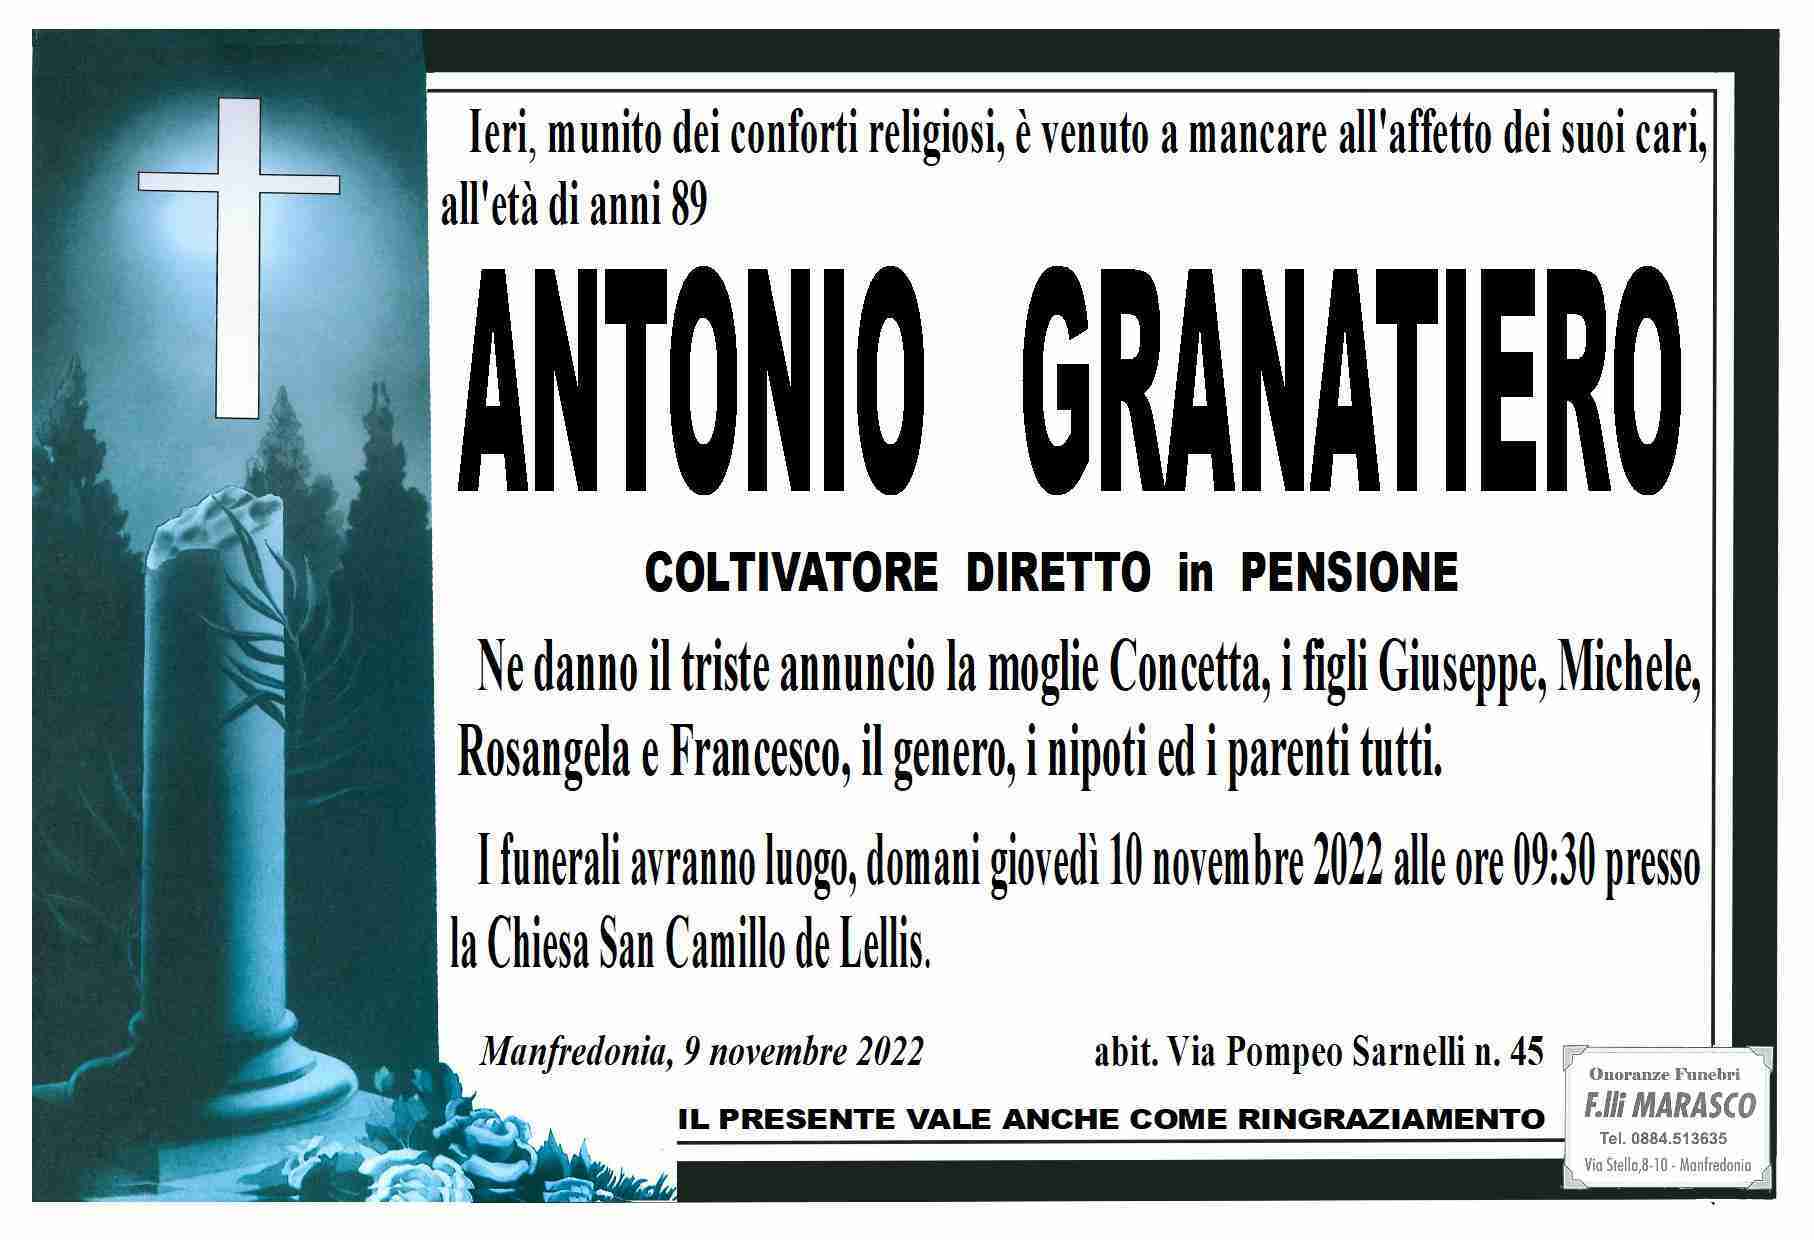 Antonio Granatiero